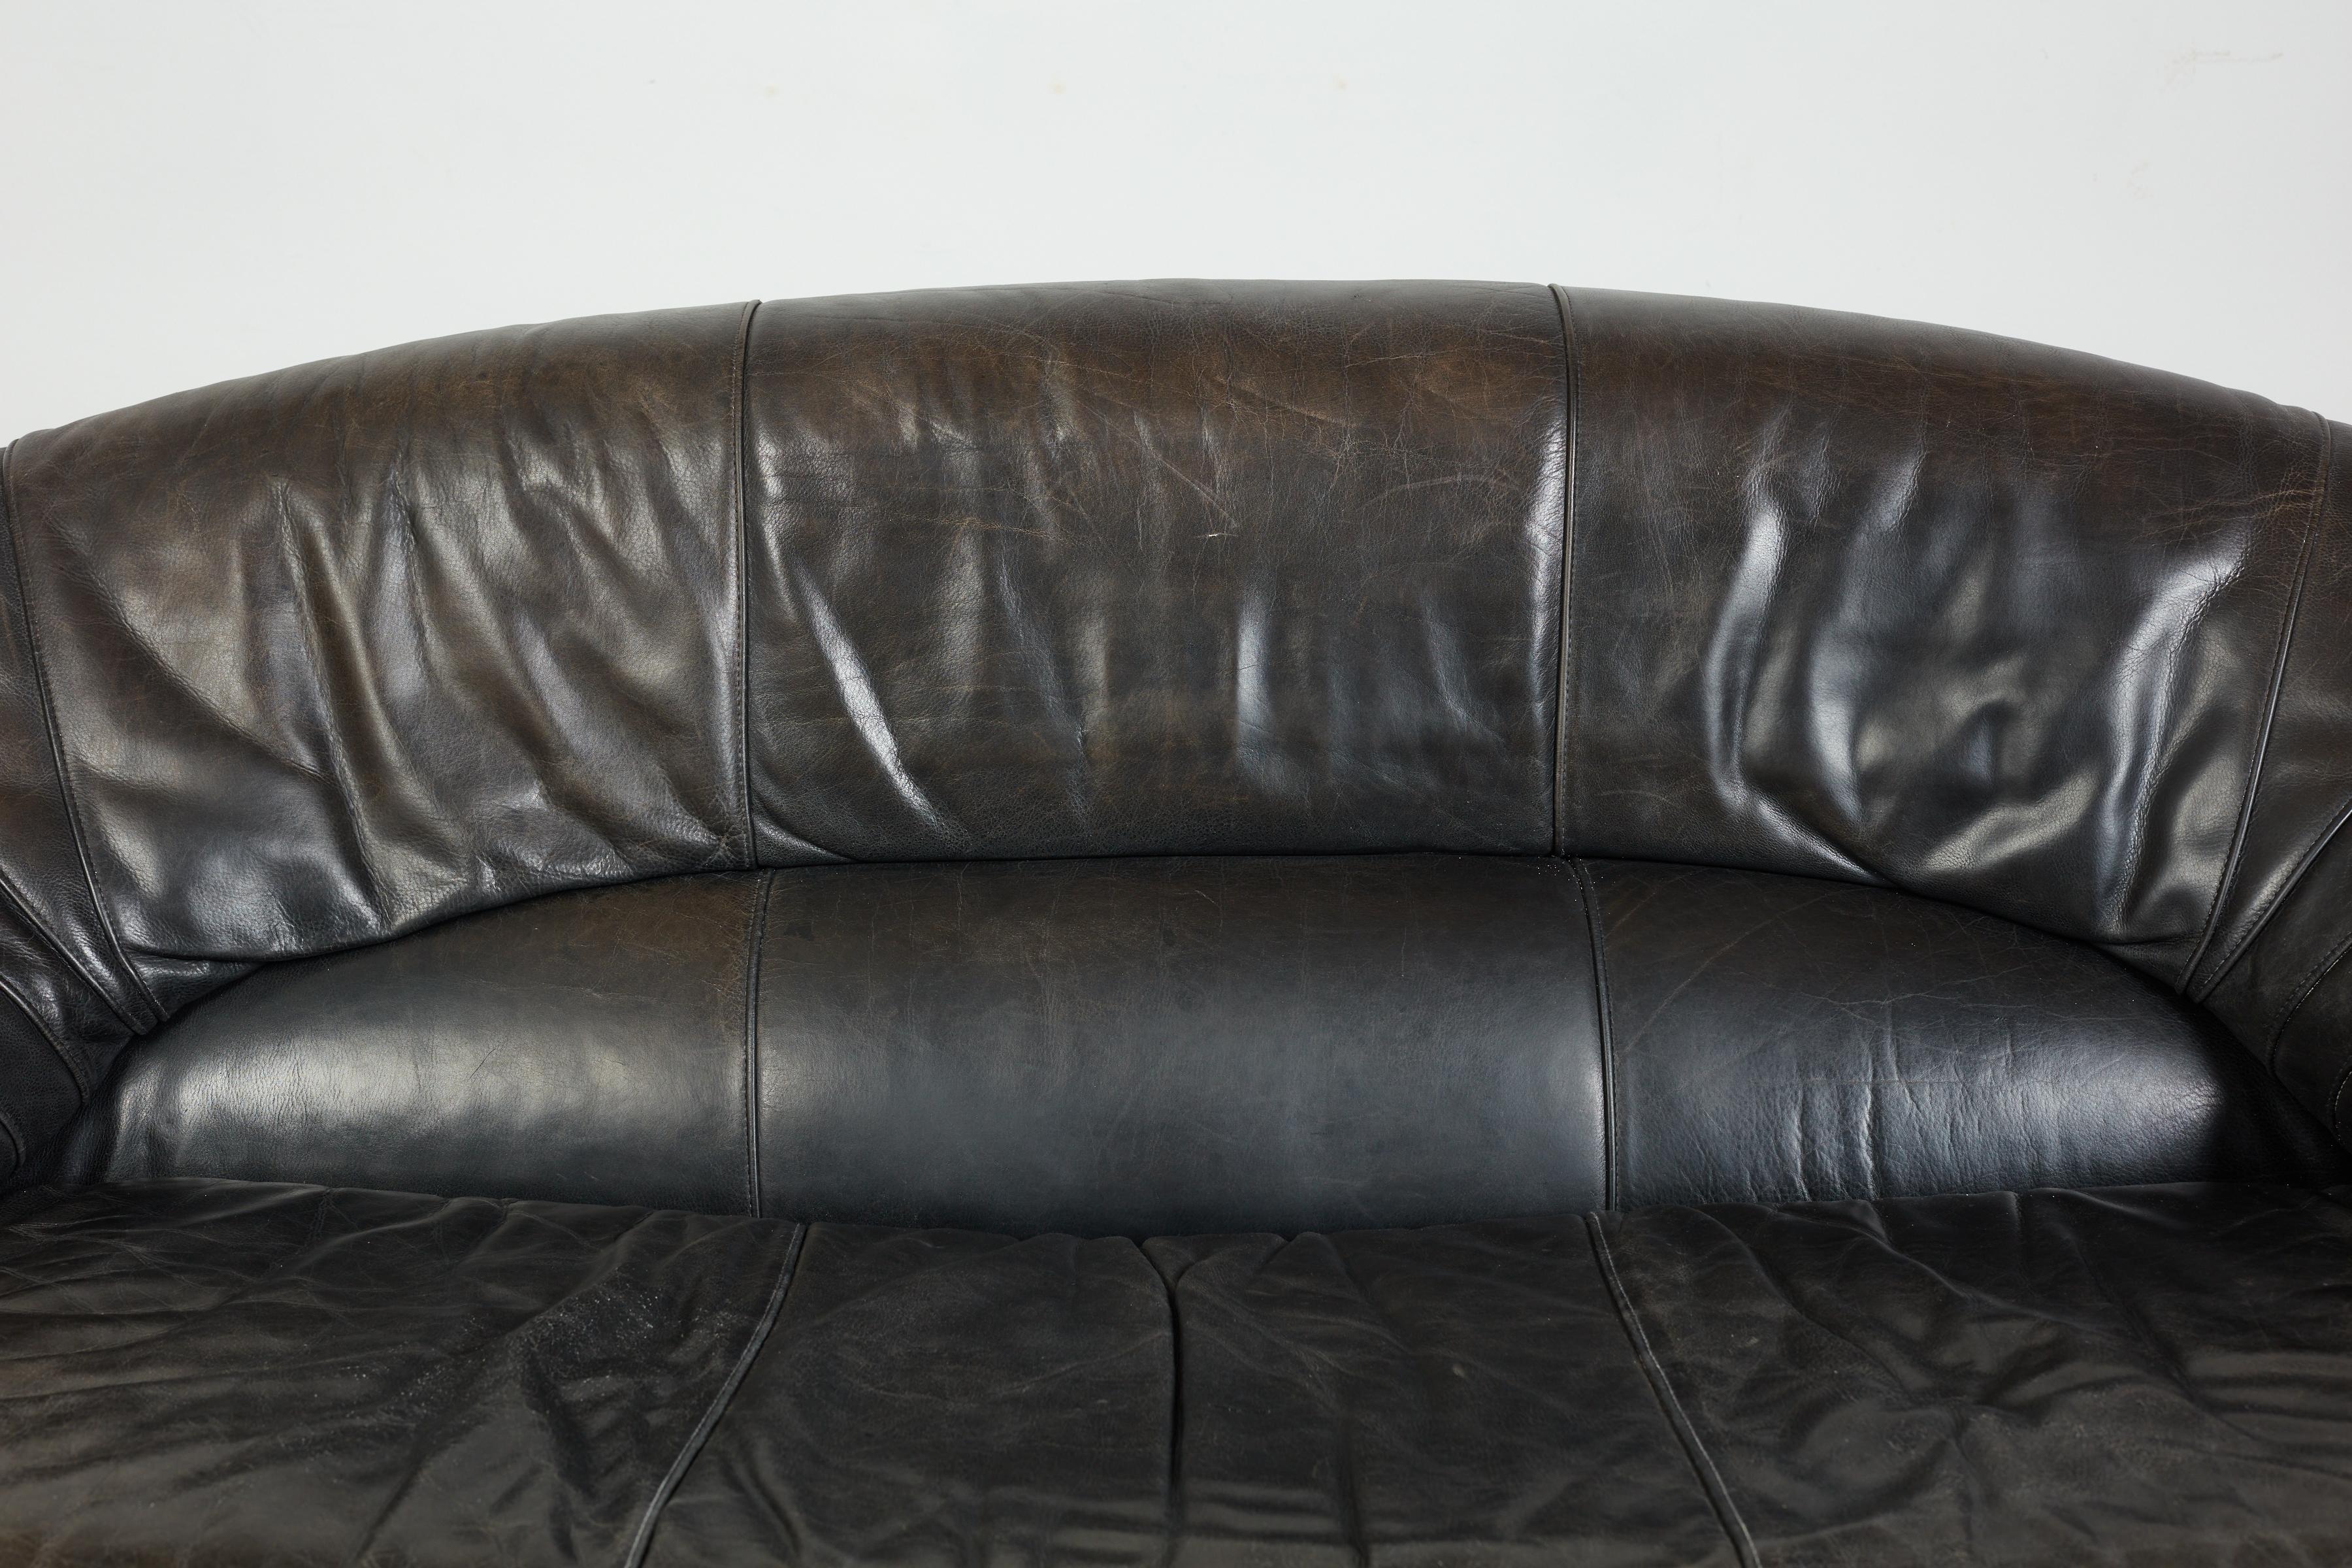 1970's Italian Leather Sofa For Sale 2